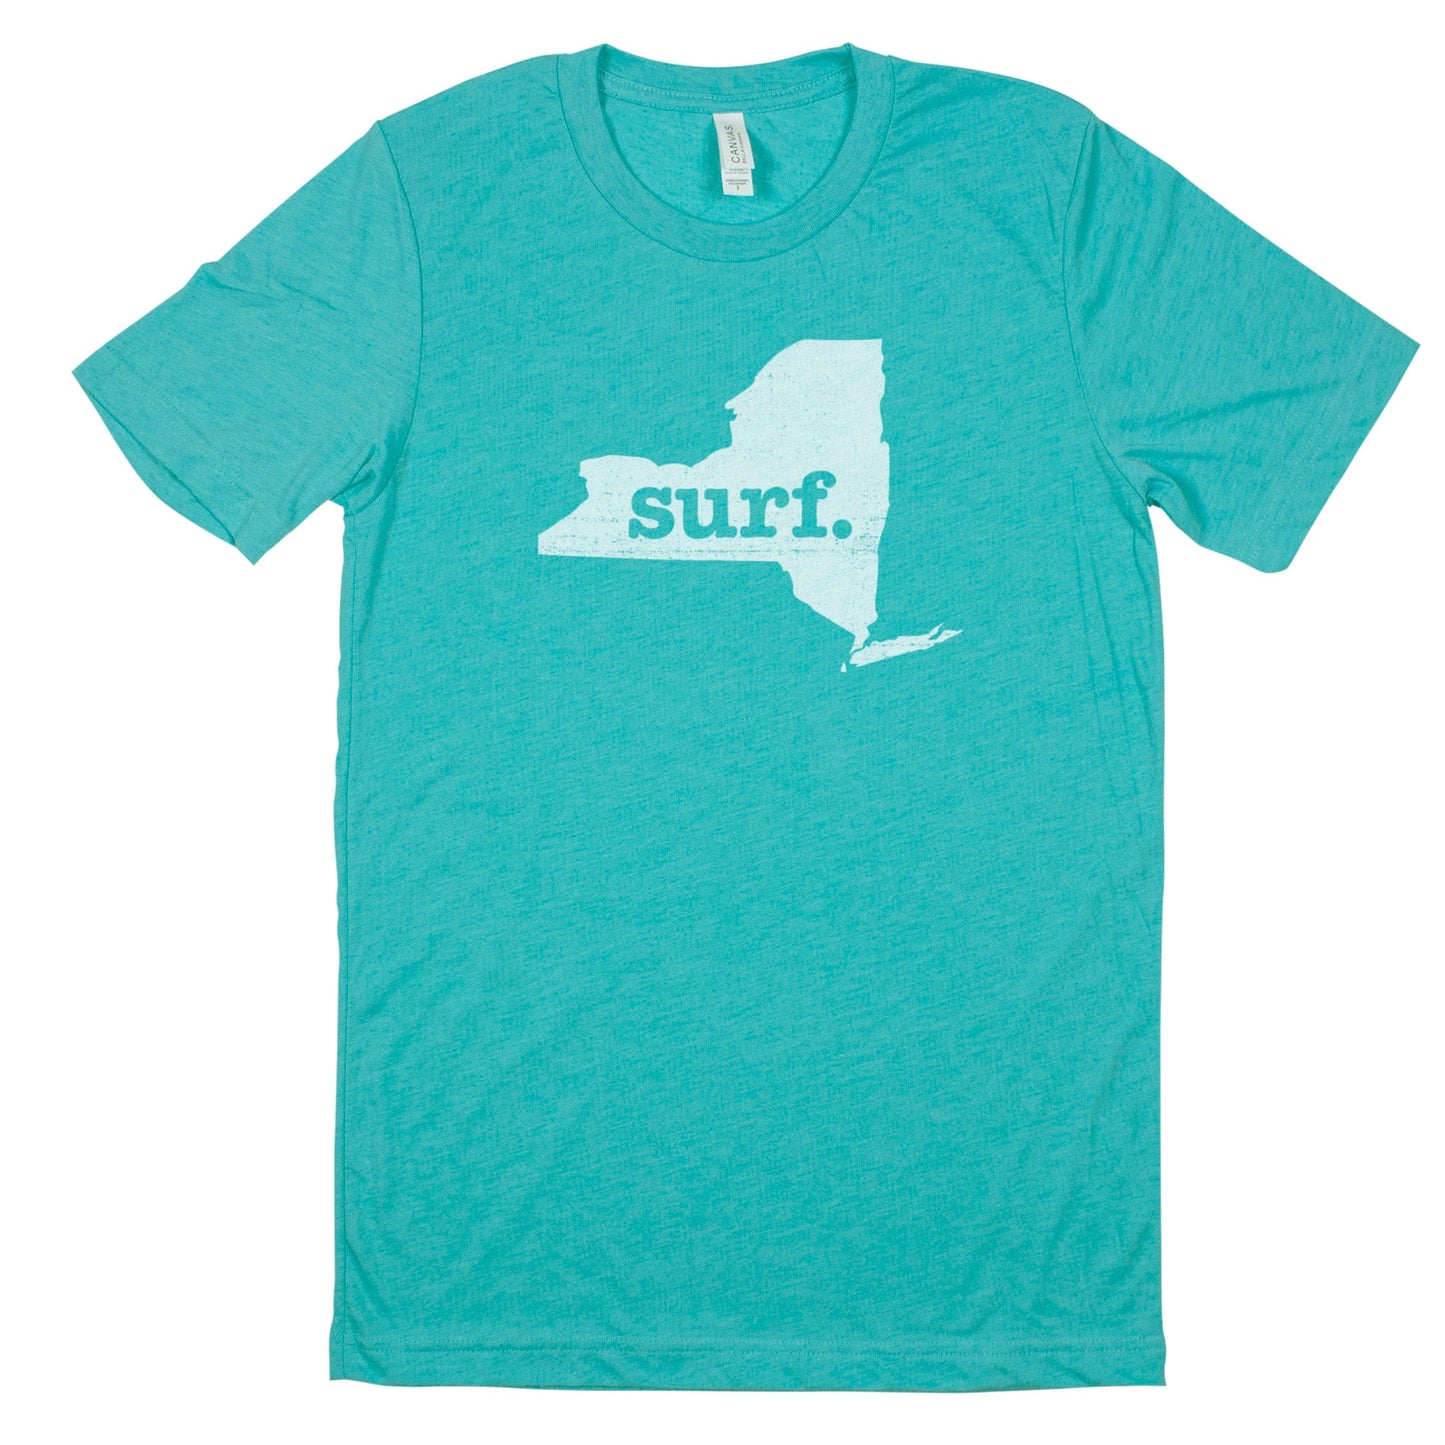 surf. Men's Unisex T-Shirt - New York